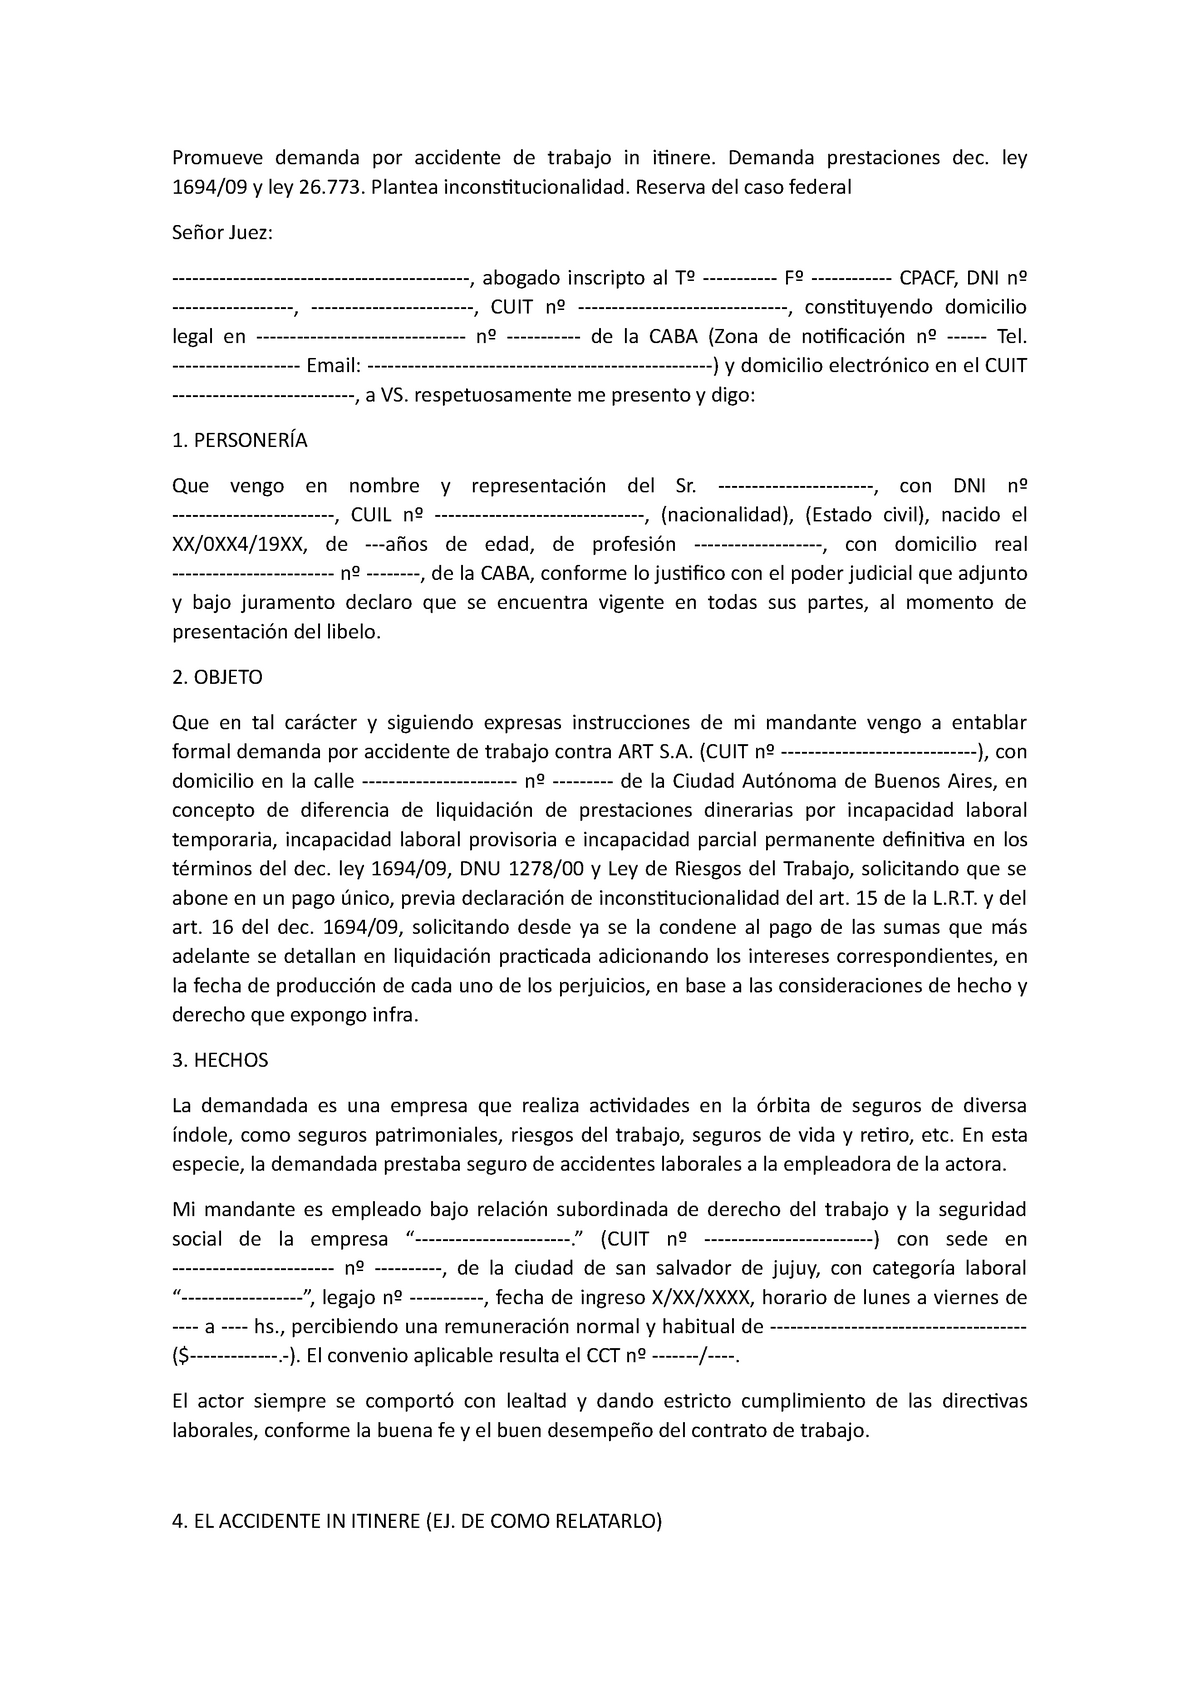 Promueve demanda por accidente de trabajo in itinere - Demanda prestaciones  dec. ley 1694/09 y ley - Studocu